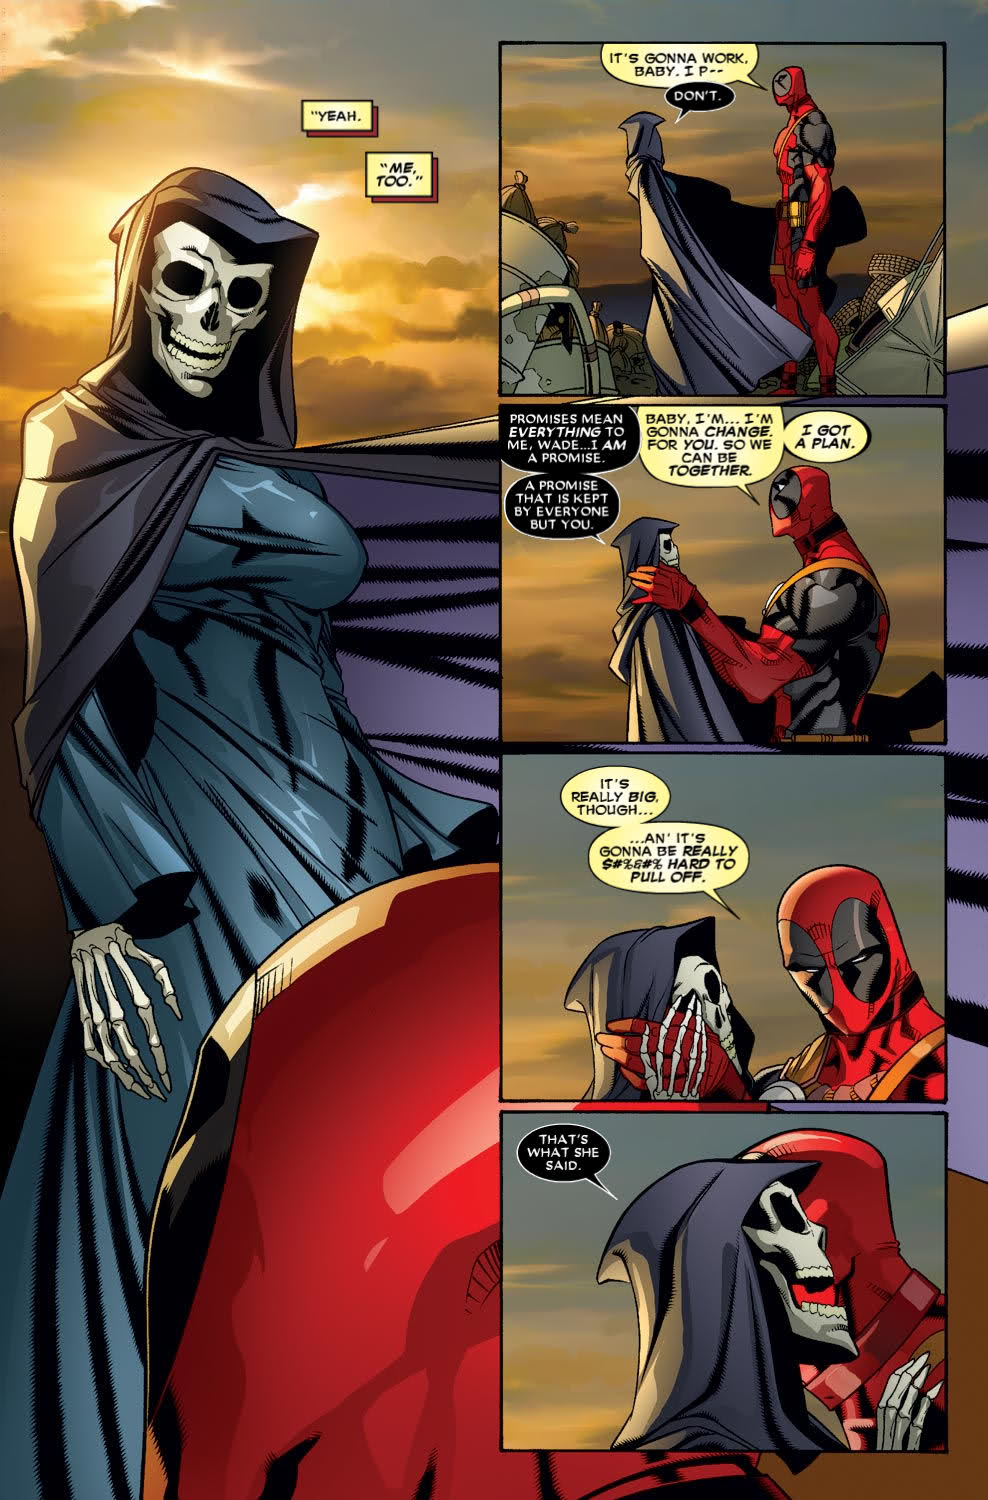 Universo Marvel 616: Doutor Estranho 3 pode estar mais perto de acontecer  do que imaginamos?